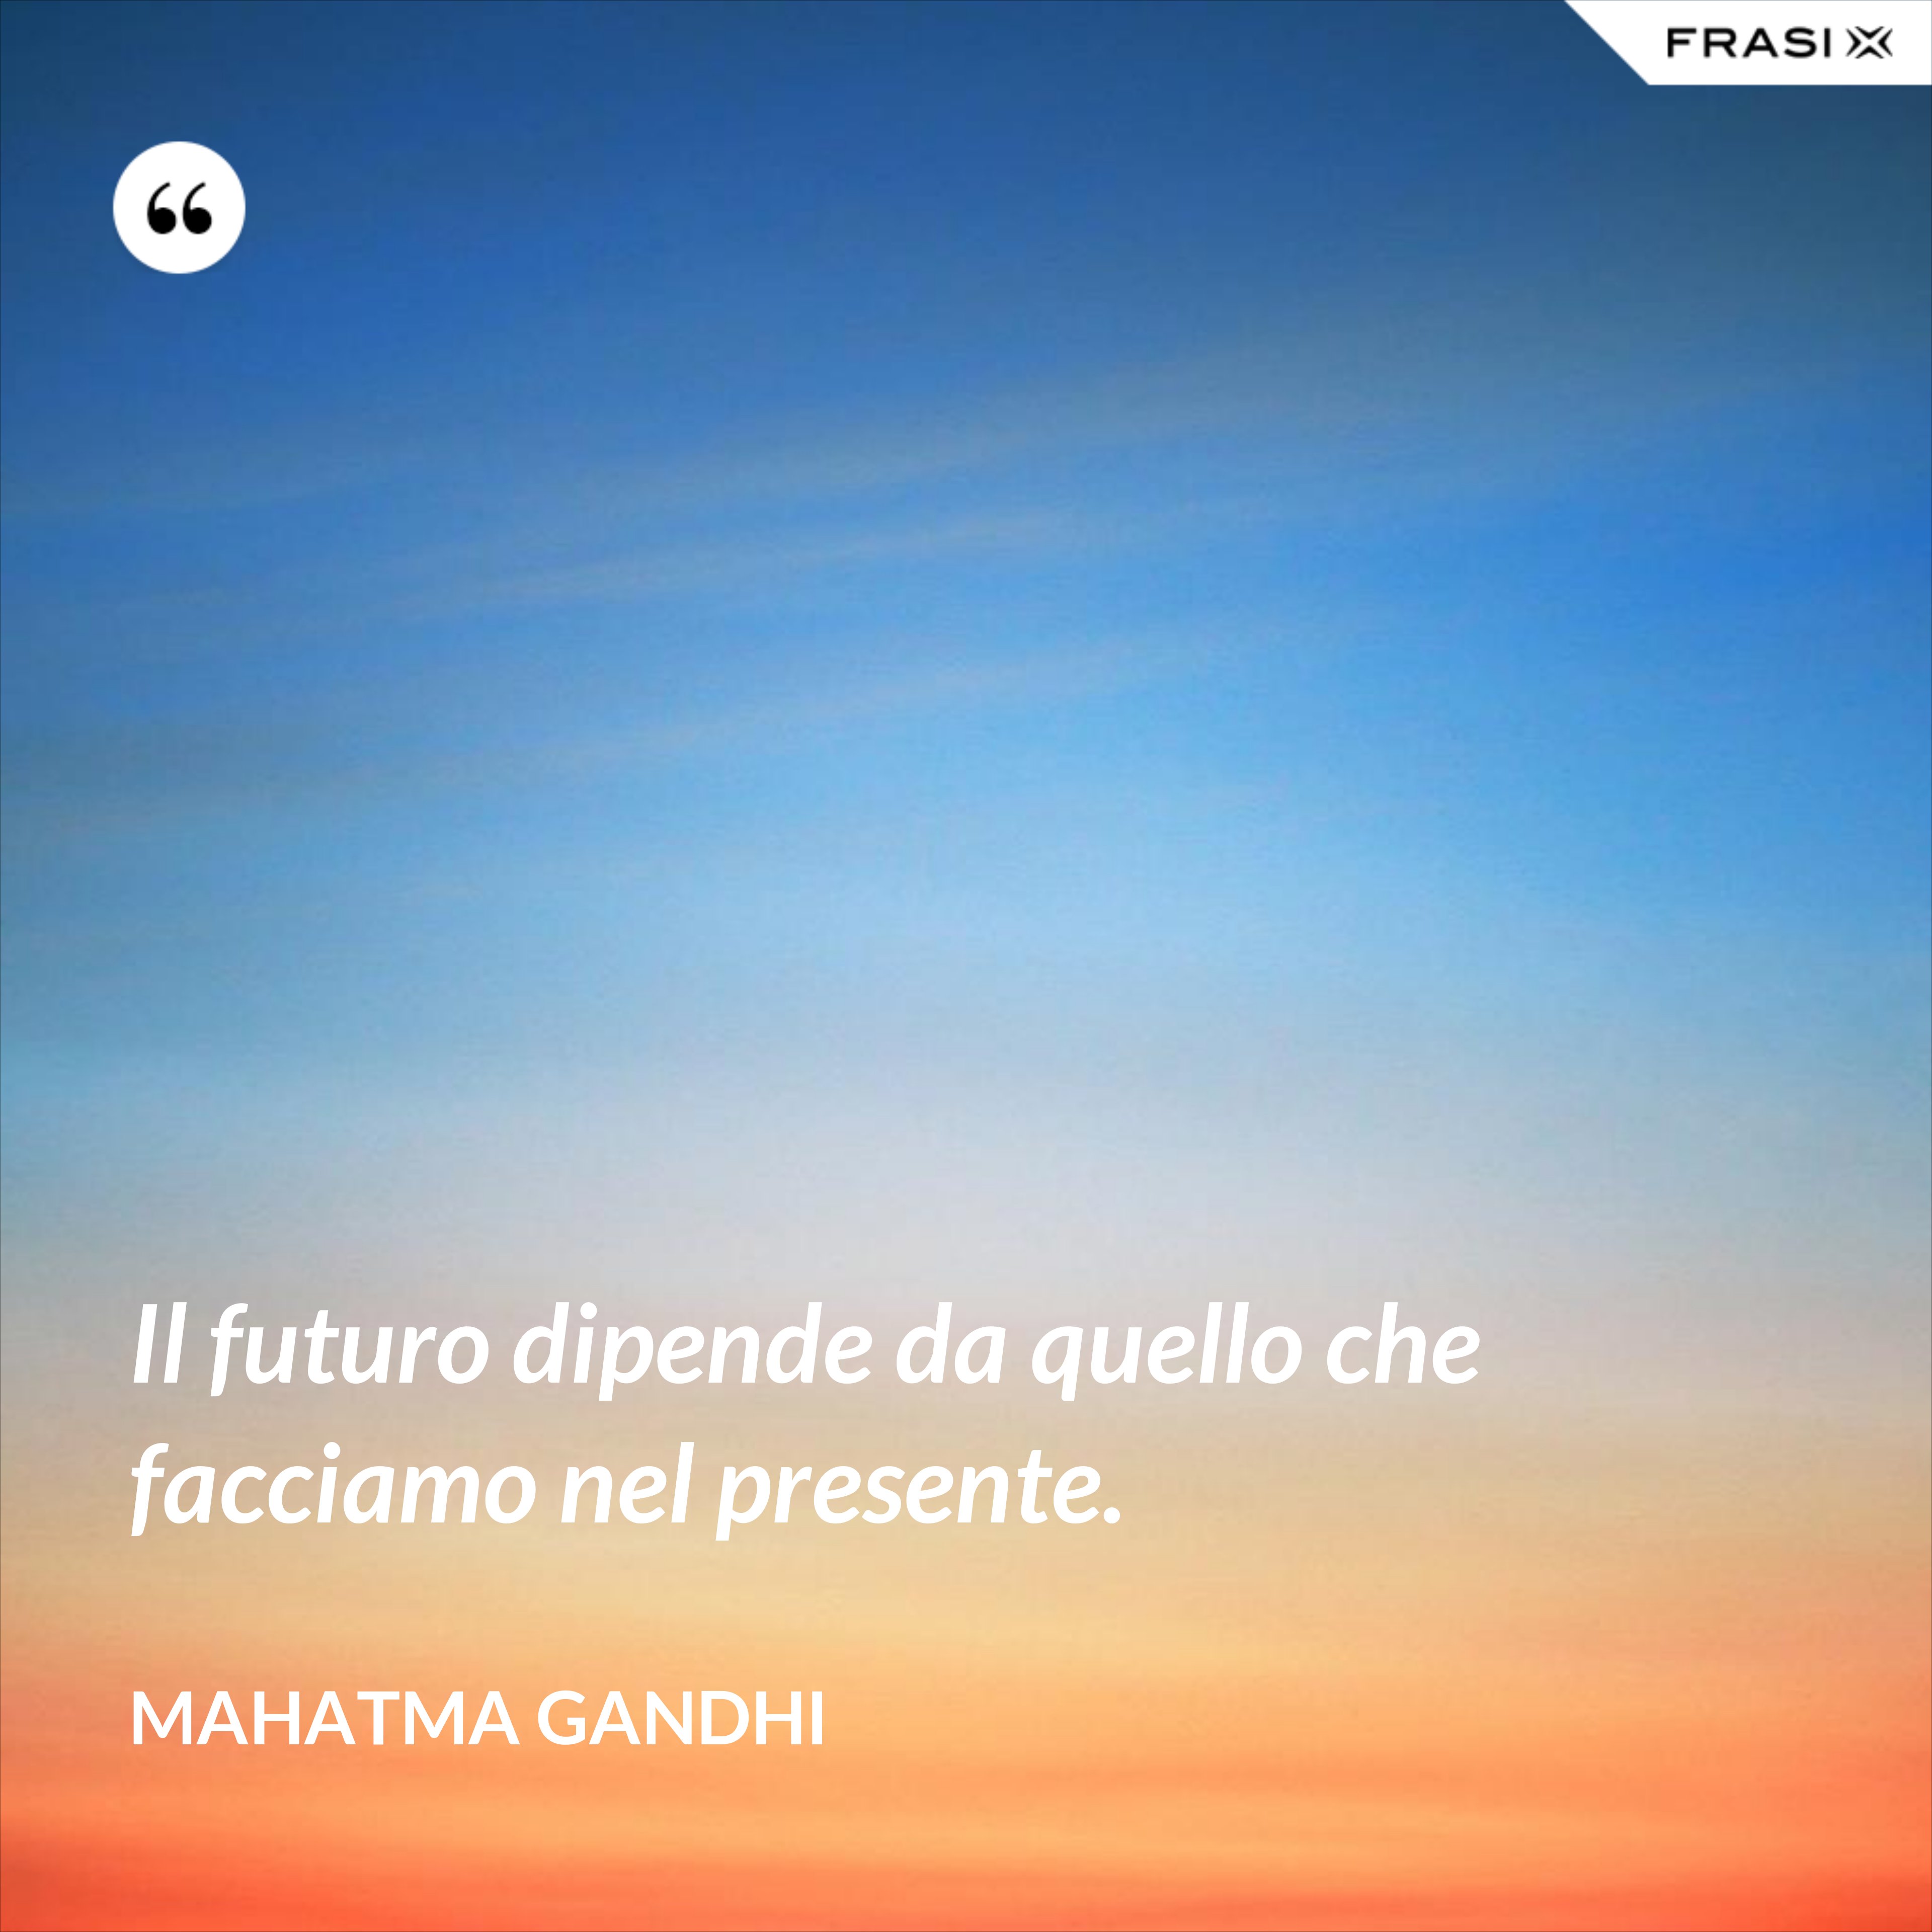 Il futuro dipende da quello che facciamo nel presente. - Mahatma Gandhi